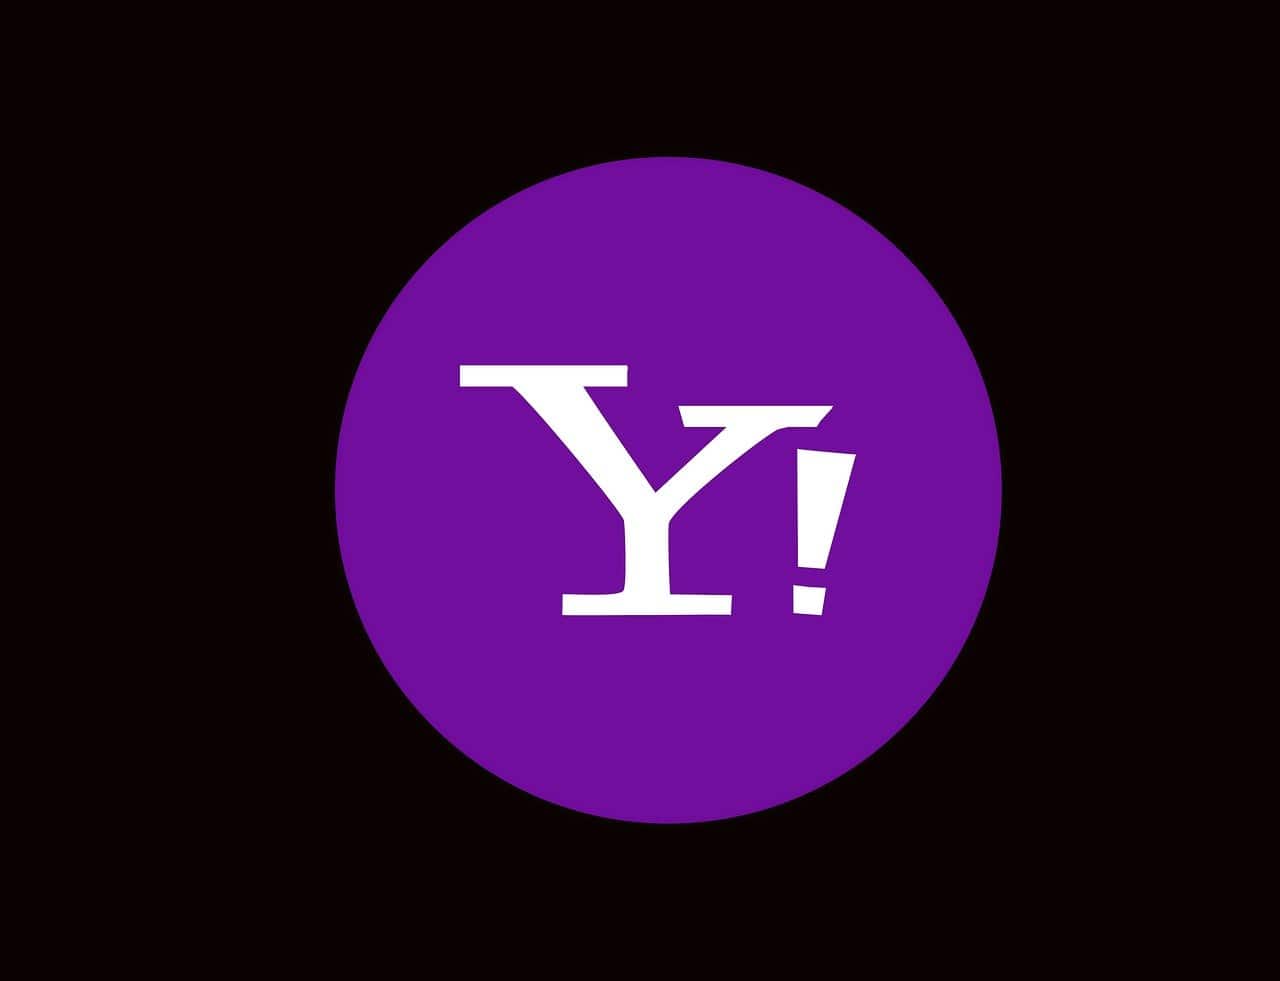 Yahoo logo with black background